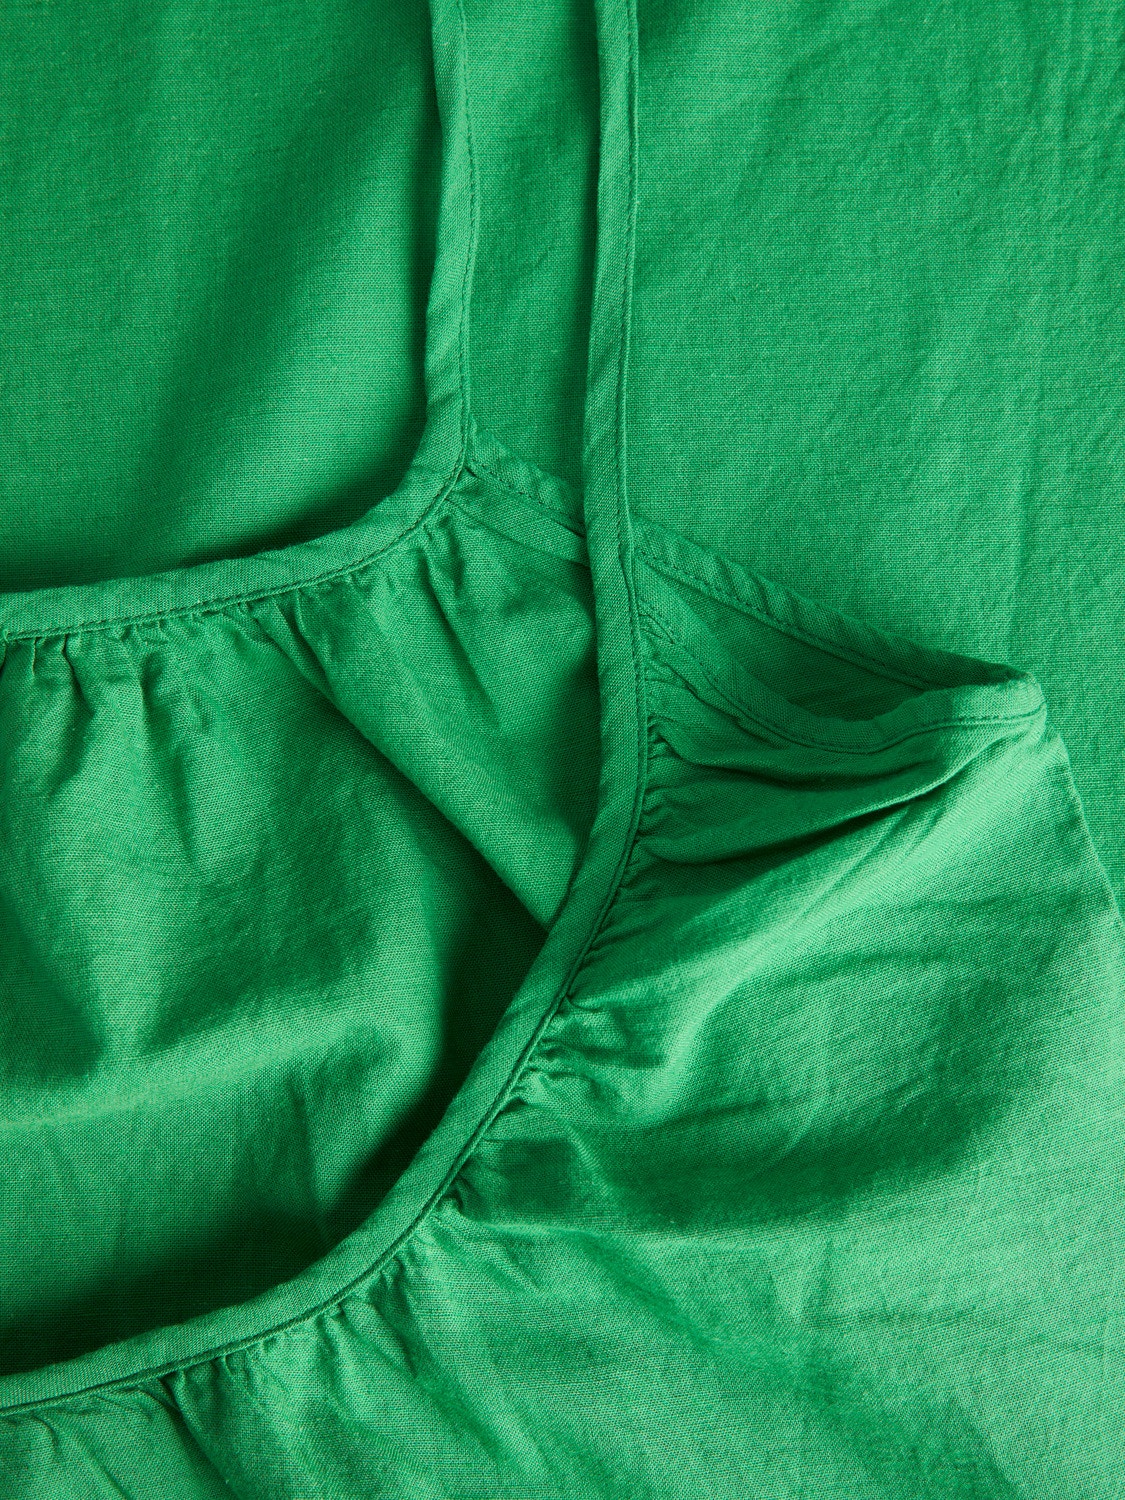 JJXX JXKARLA Avslappnad klänning -Medium Green - 12249766